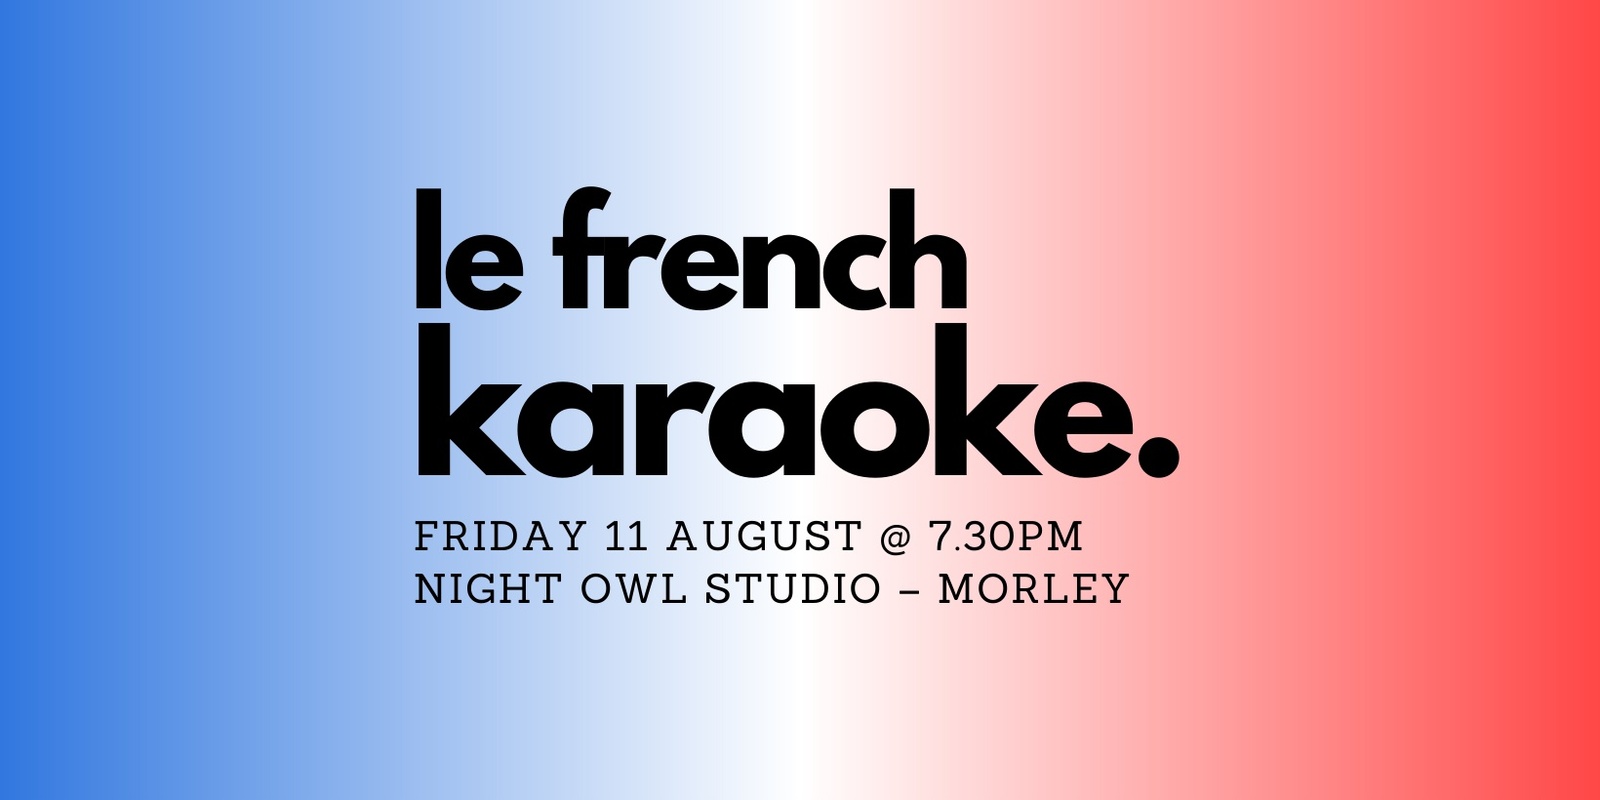 le french karaoke. edition #1